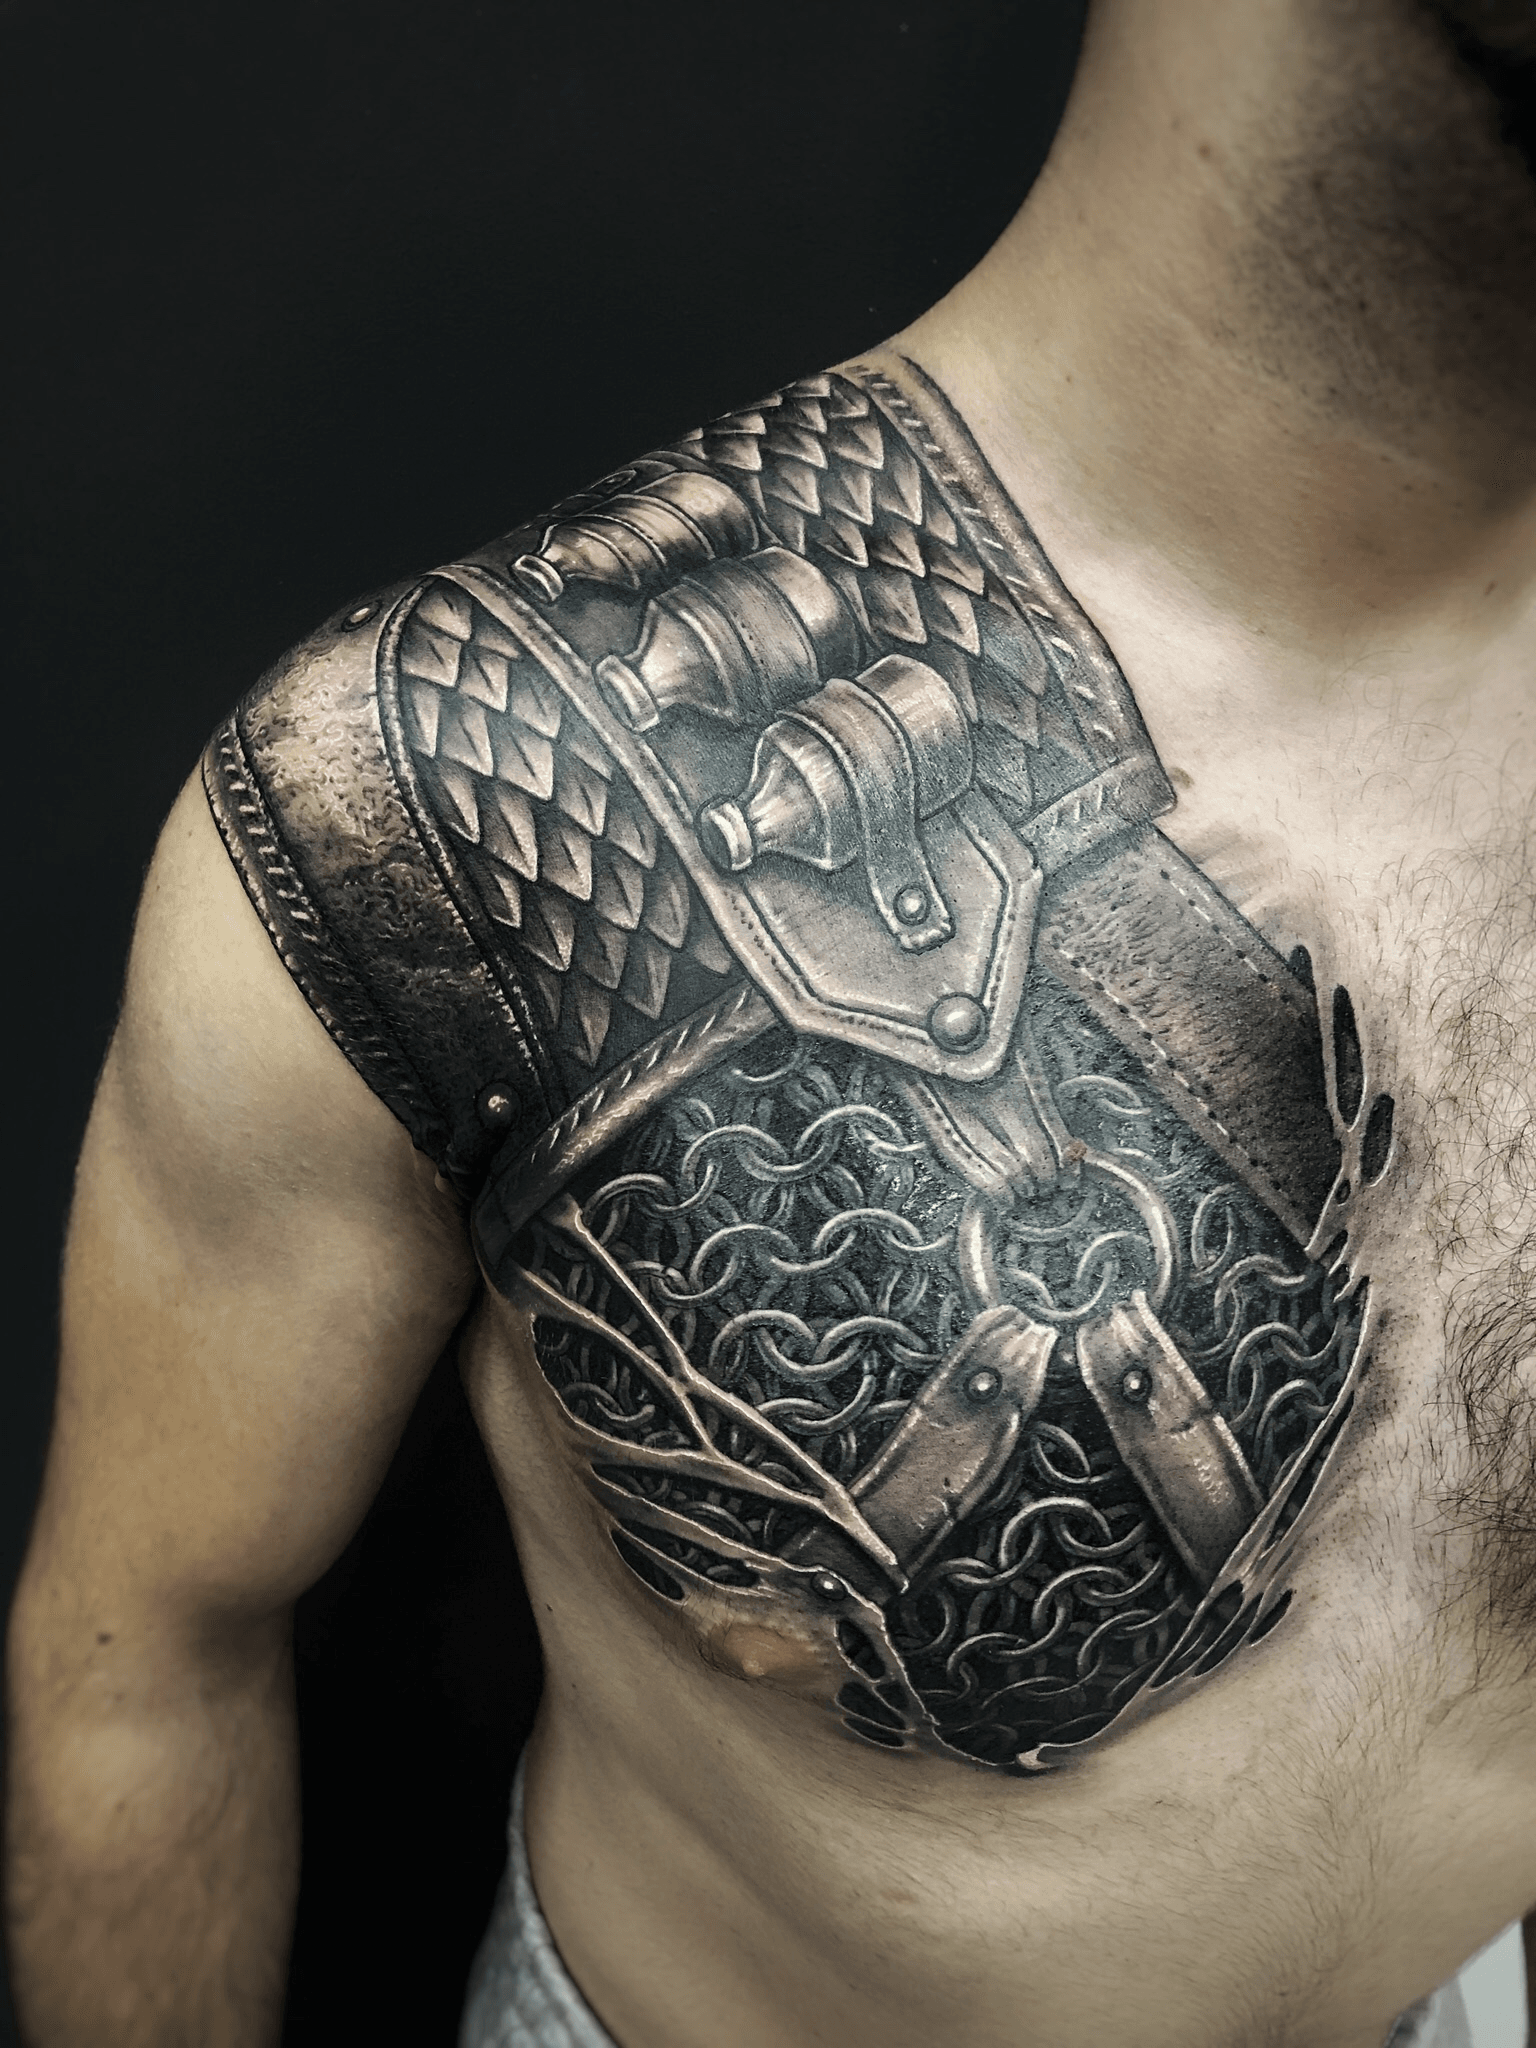 Witcher tags tattoo ideas  World Tattoo Gallery